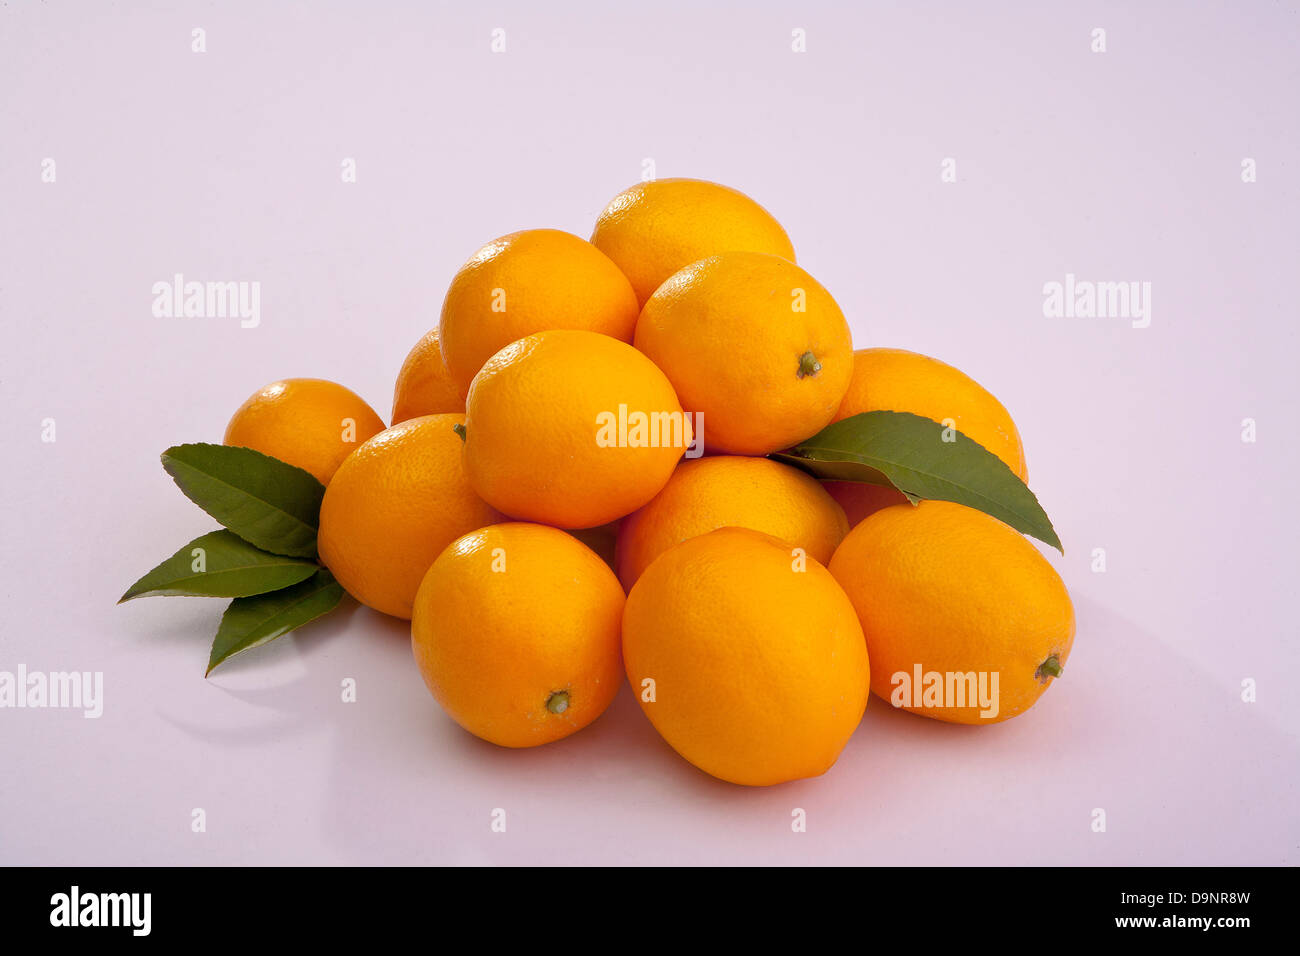 Grupo de limones cortados y todo Meyer limones agrios Foto de stock